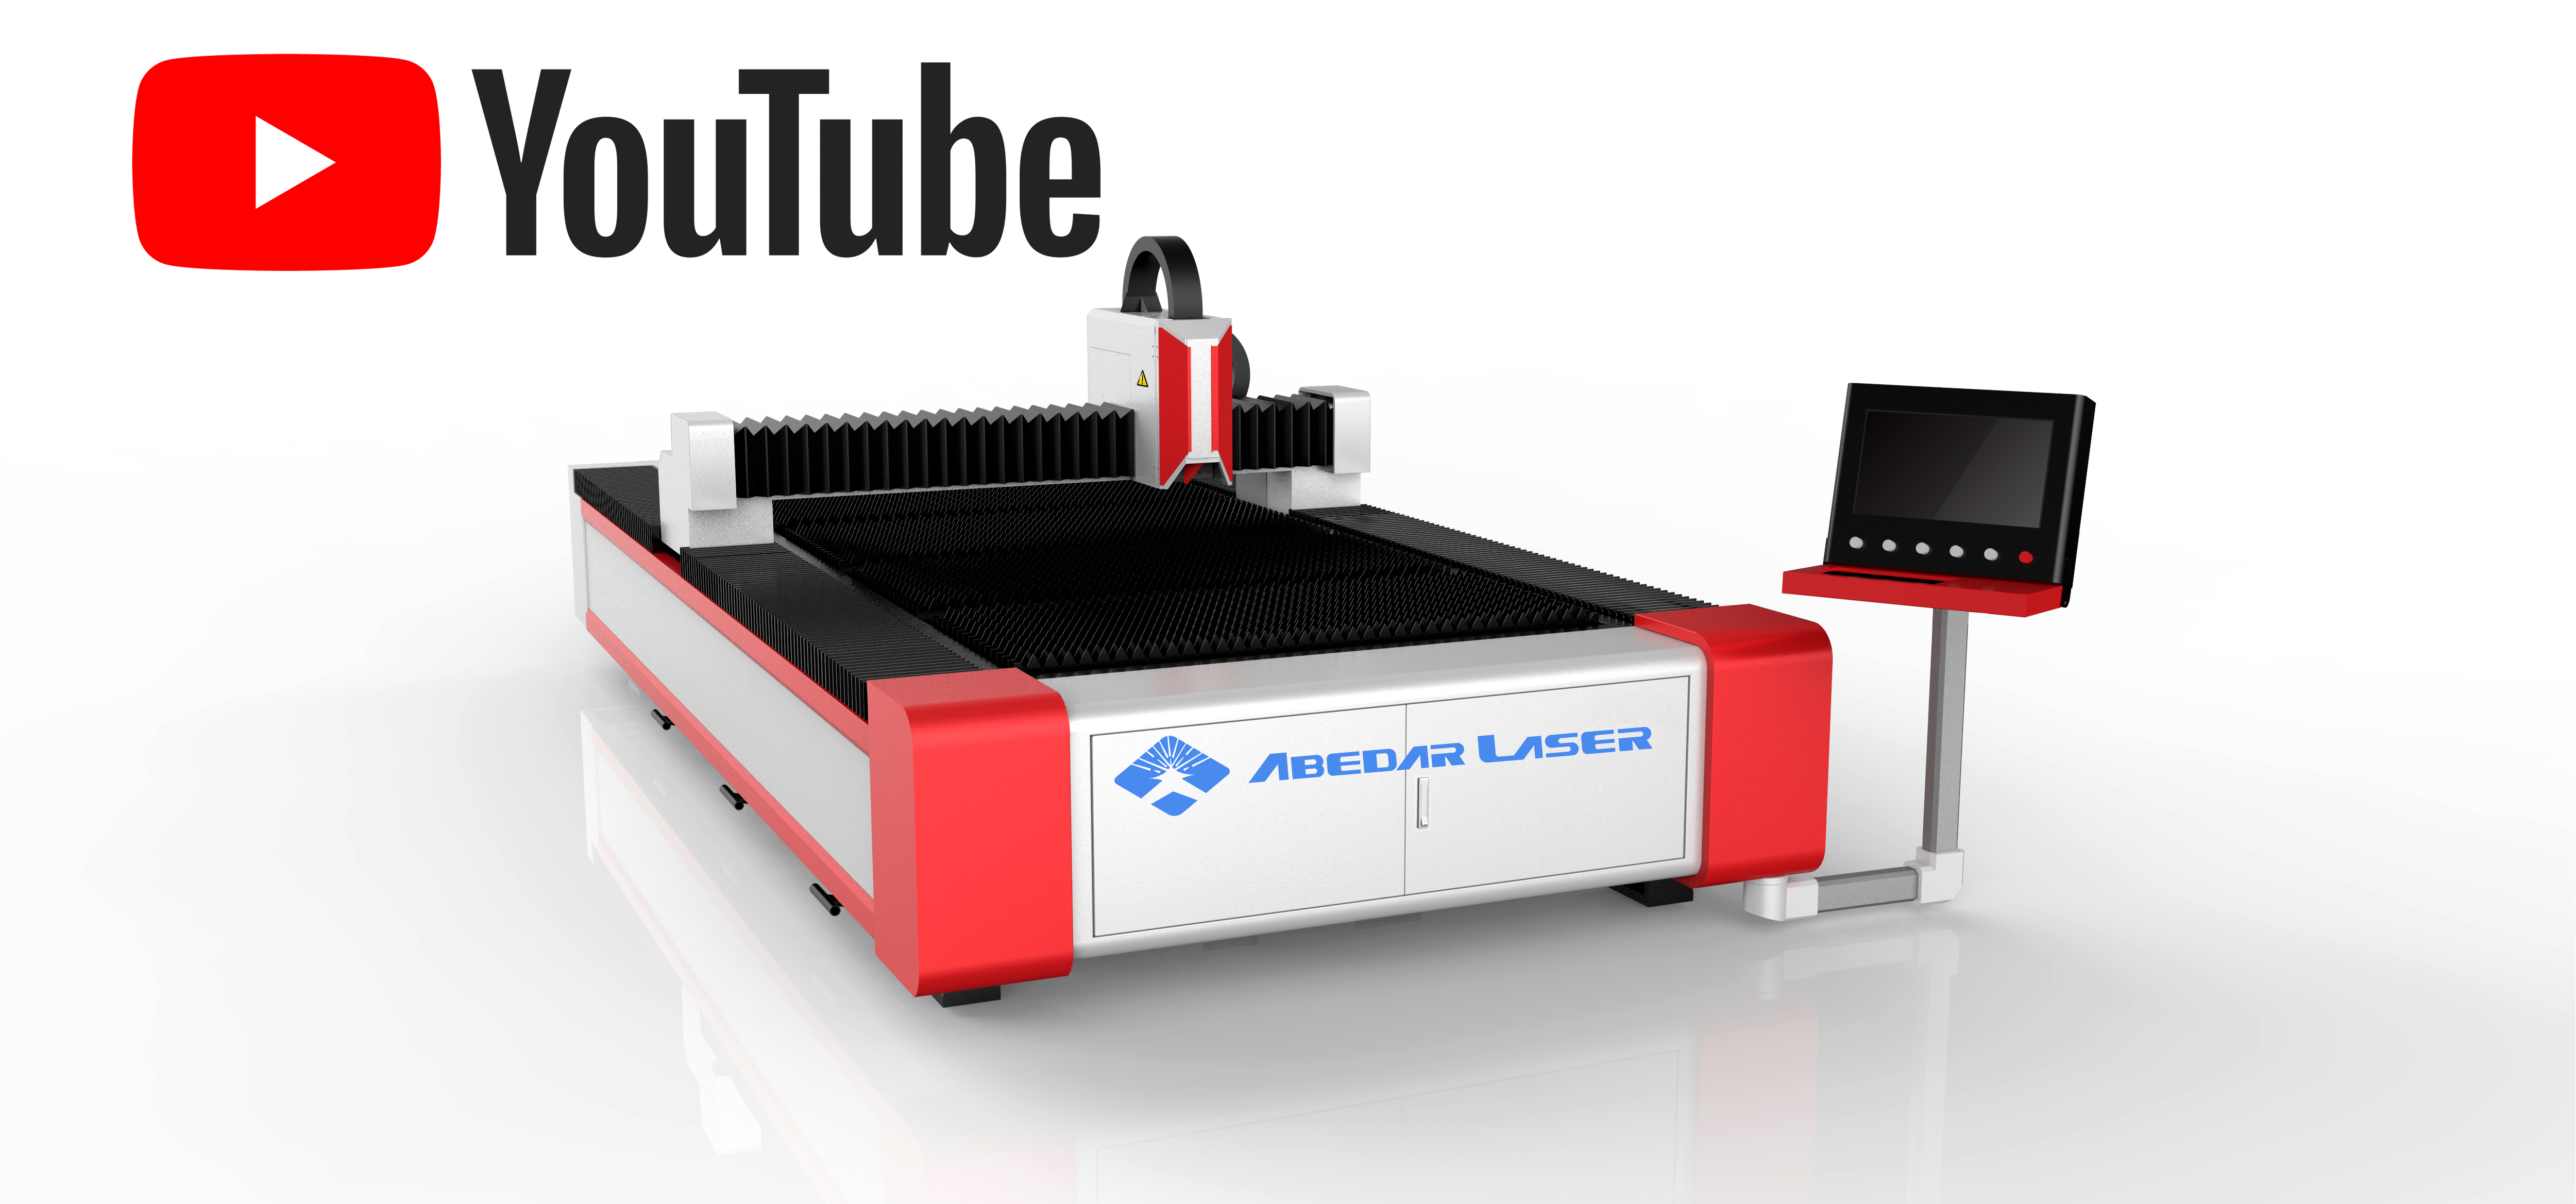 Fiber Laser Cutting Machine For Sale